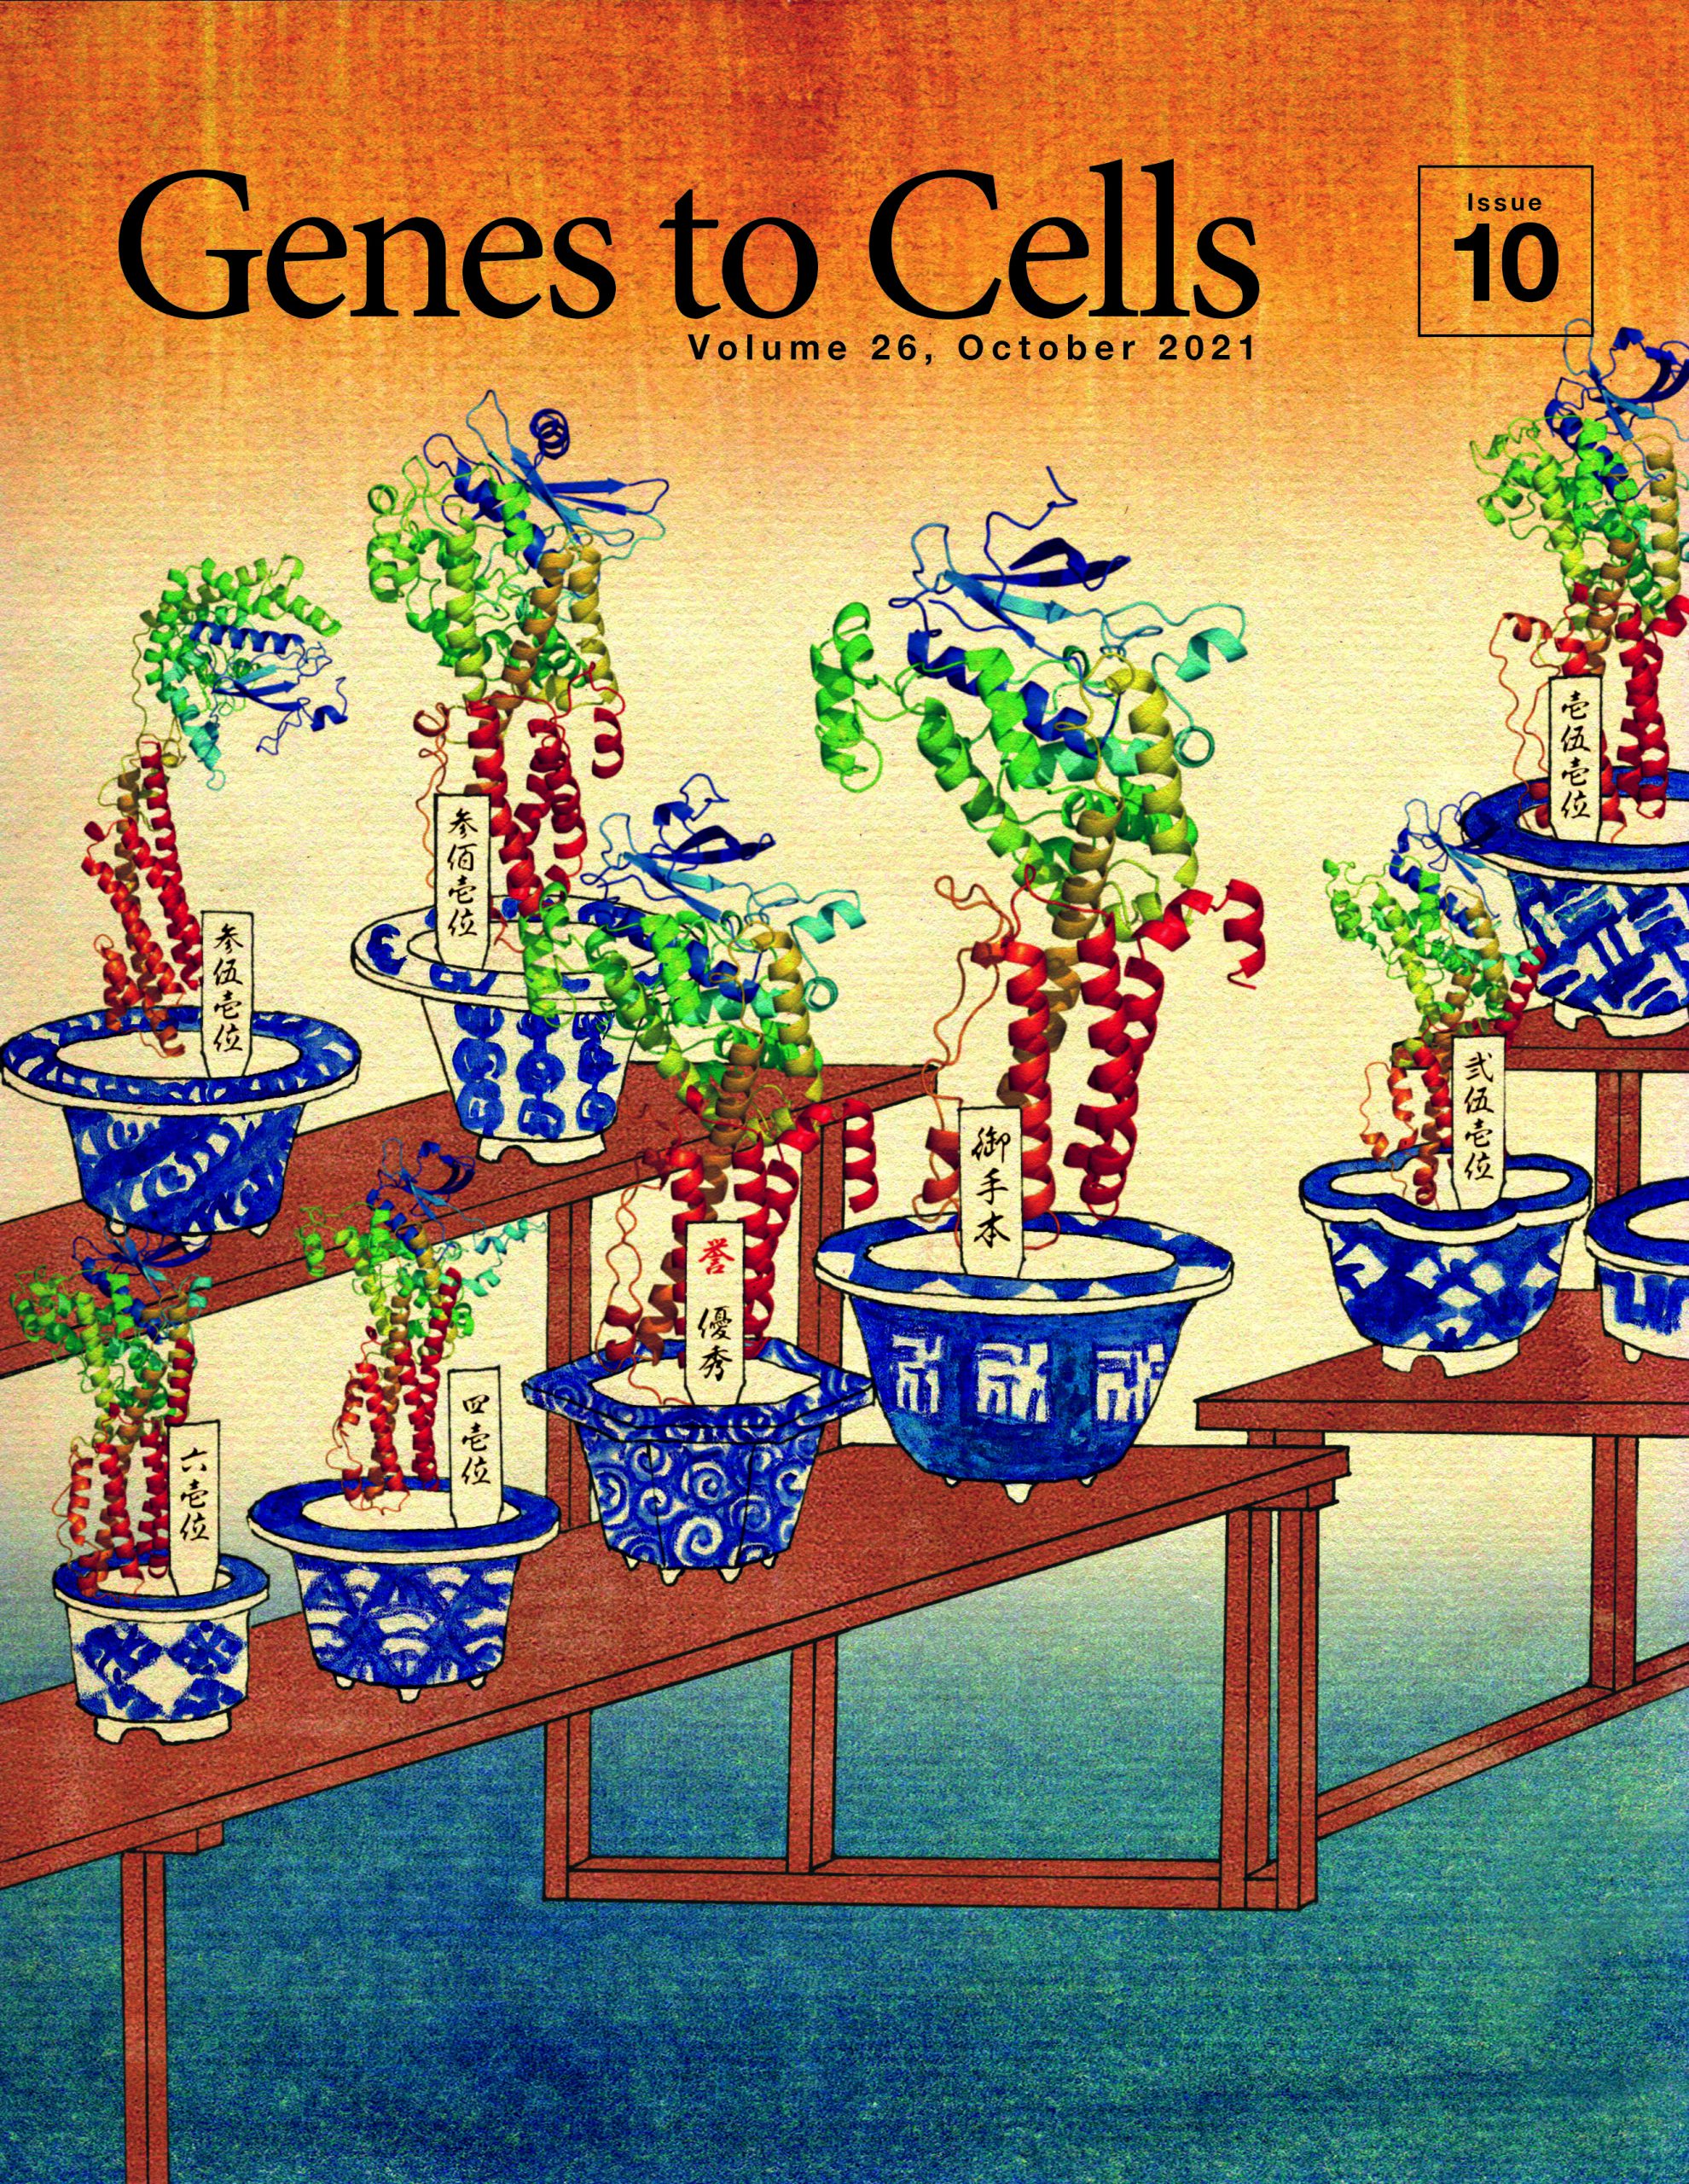 日本分子生物学会のGenes to Cellsの10月号が発行されました。